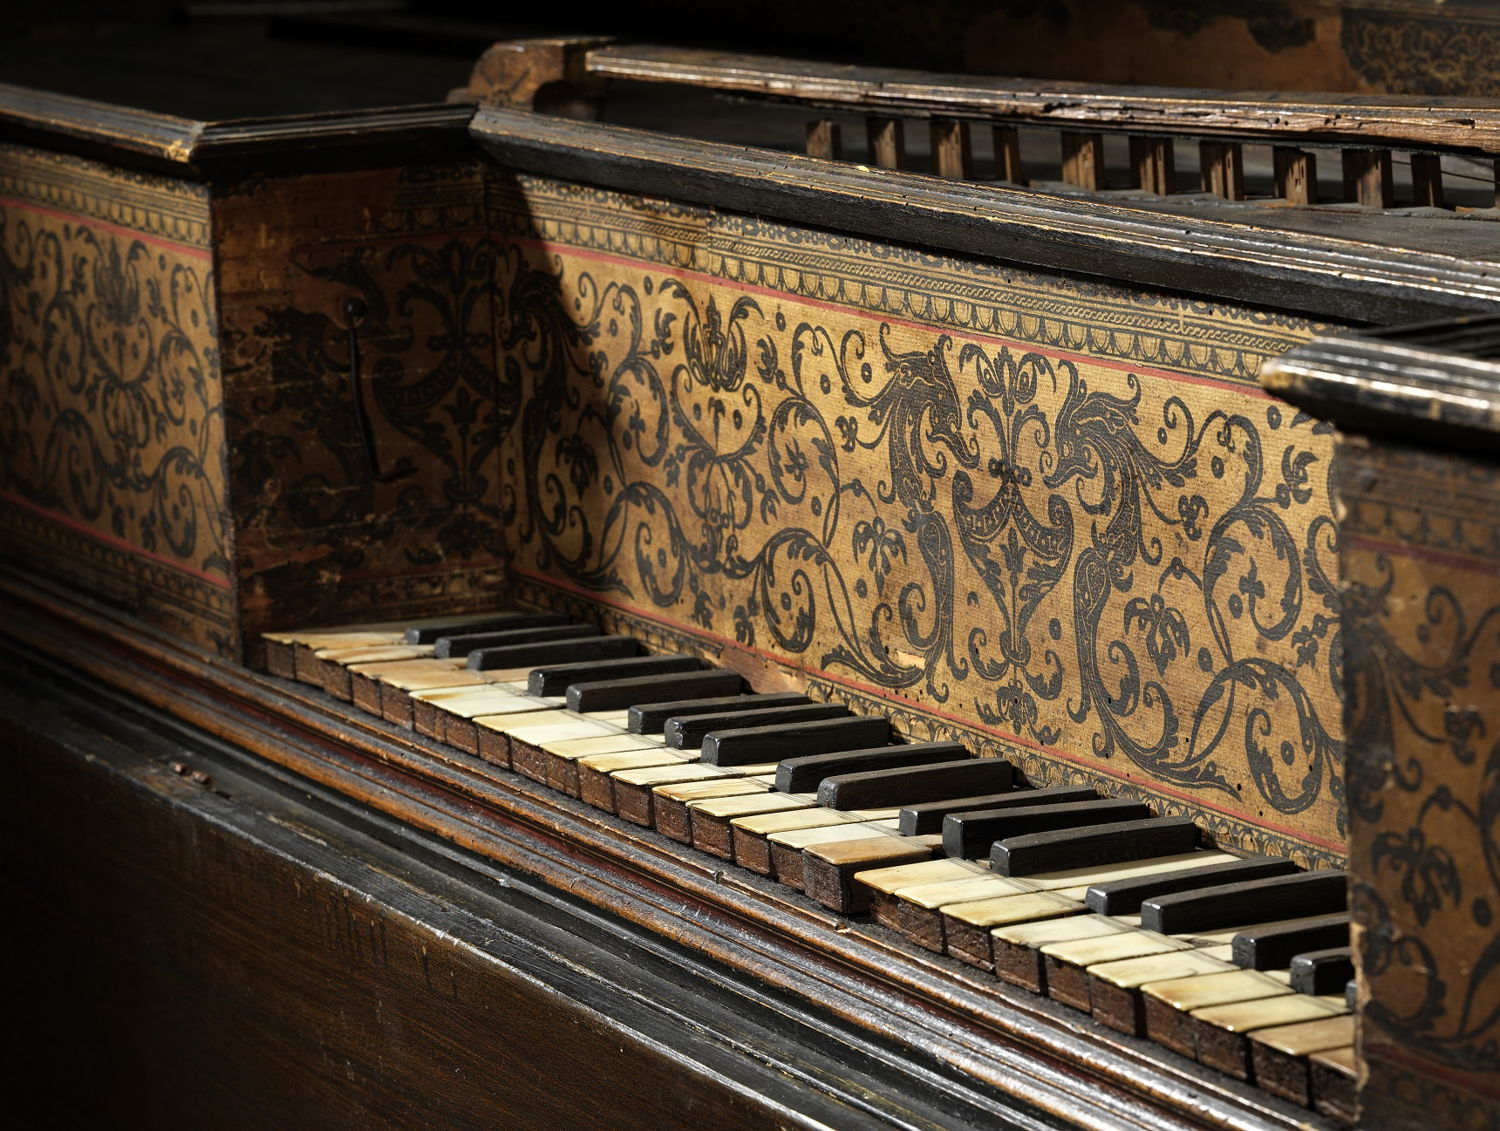 Klavier van het virginaal (muselaar) van Joannes Ruckers, 1611